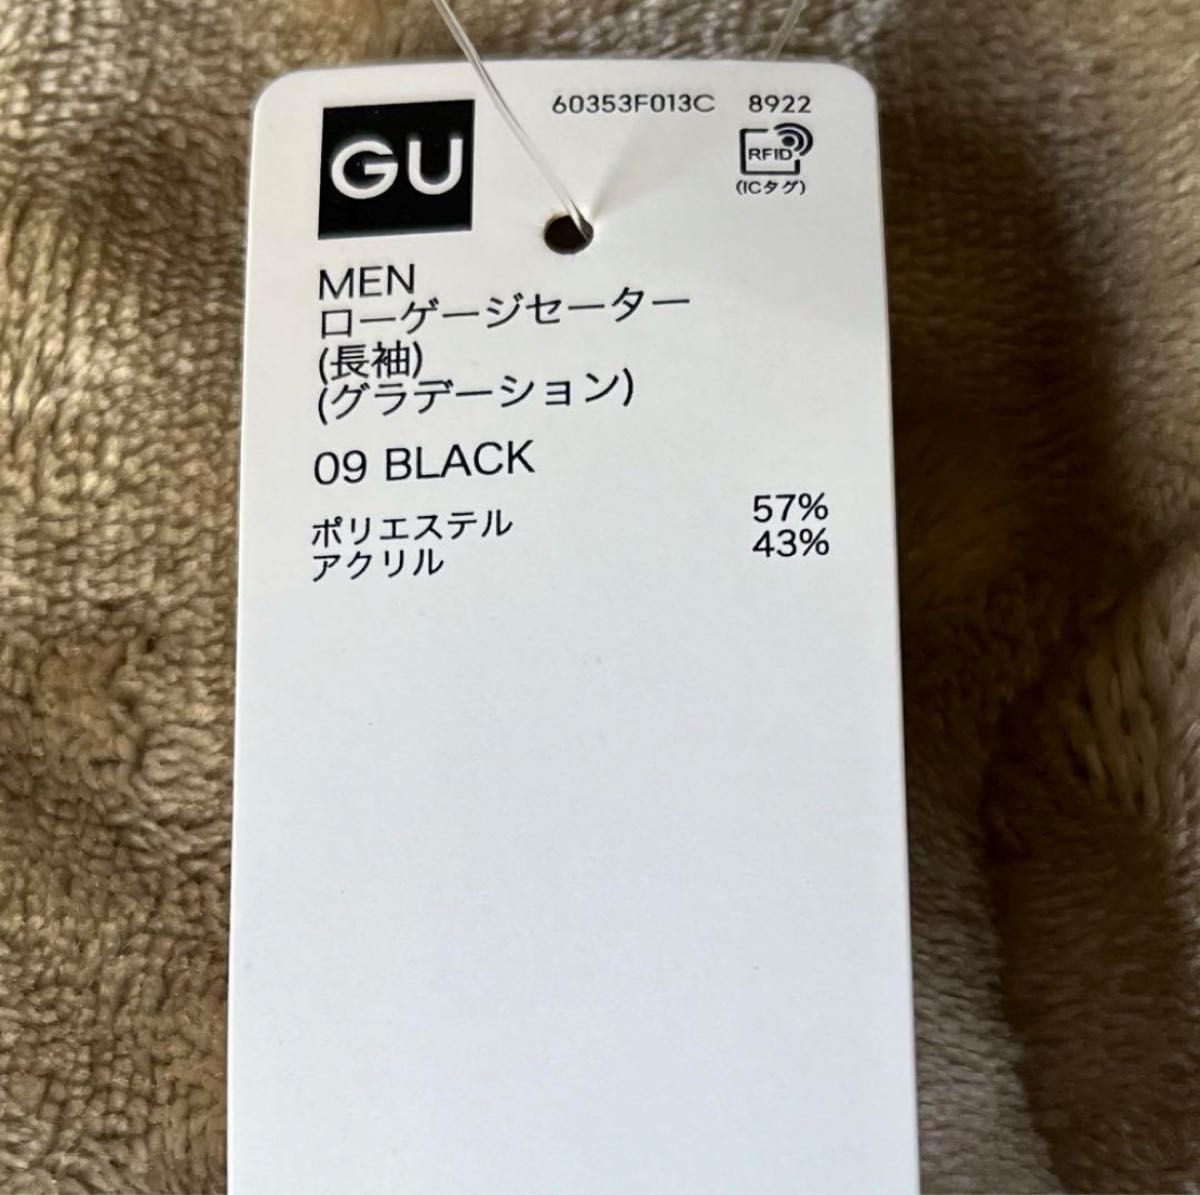 新品タグ付き★GU ローゲージセーター グラデーション ブラック XS ニット ジーユー